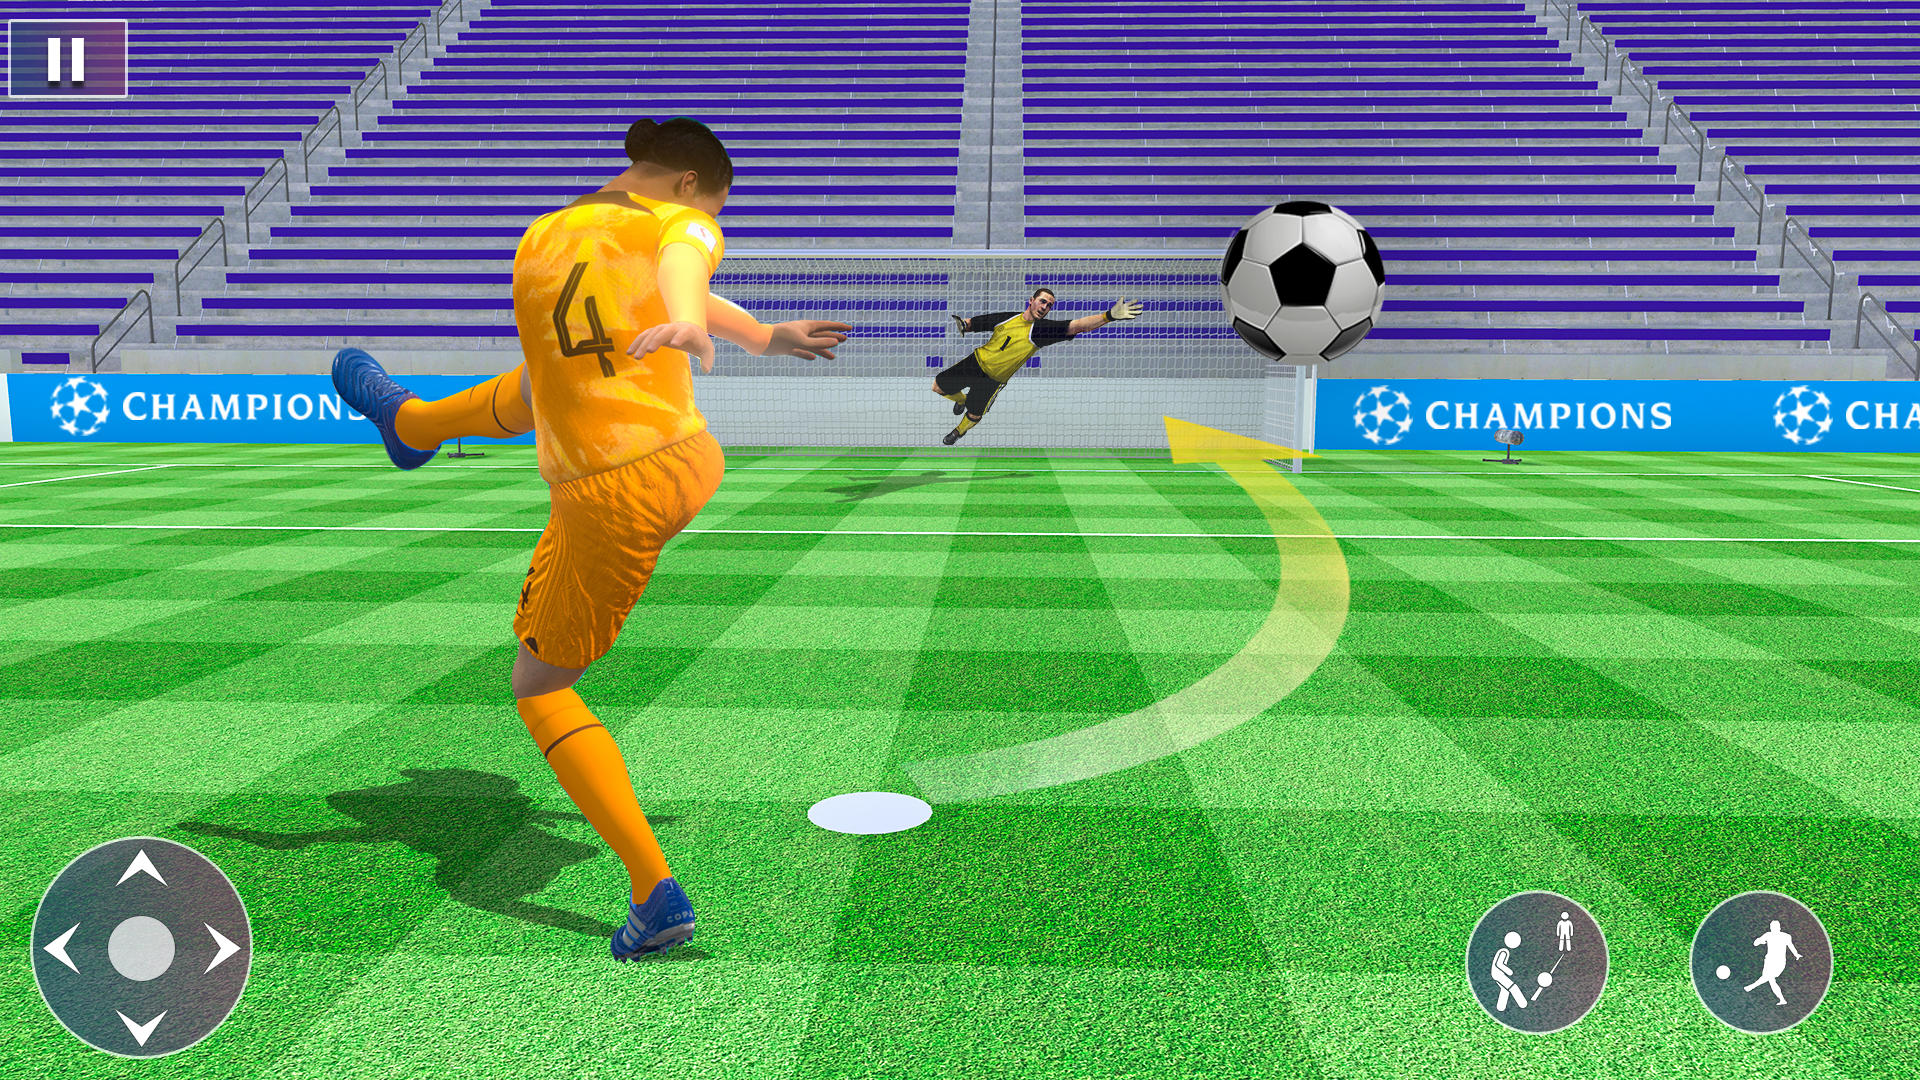 FlatSoccer Juego de futbol version móvil androide iOS-TapTap